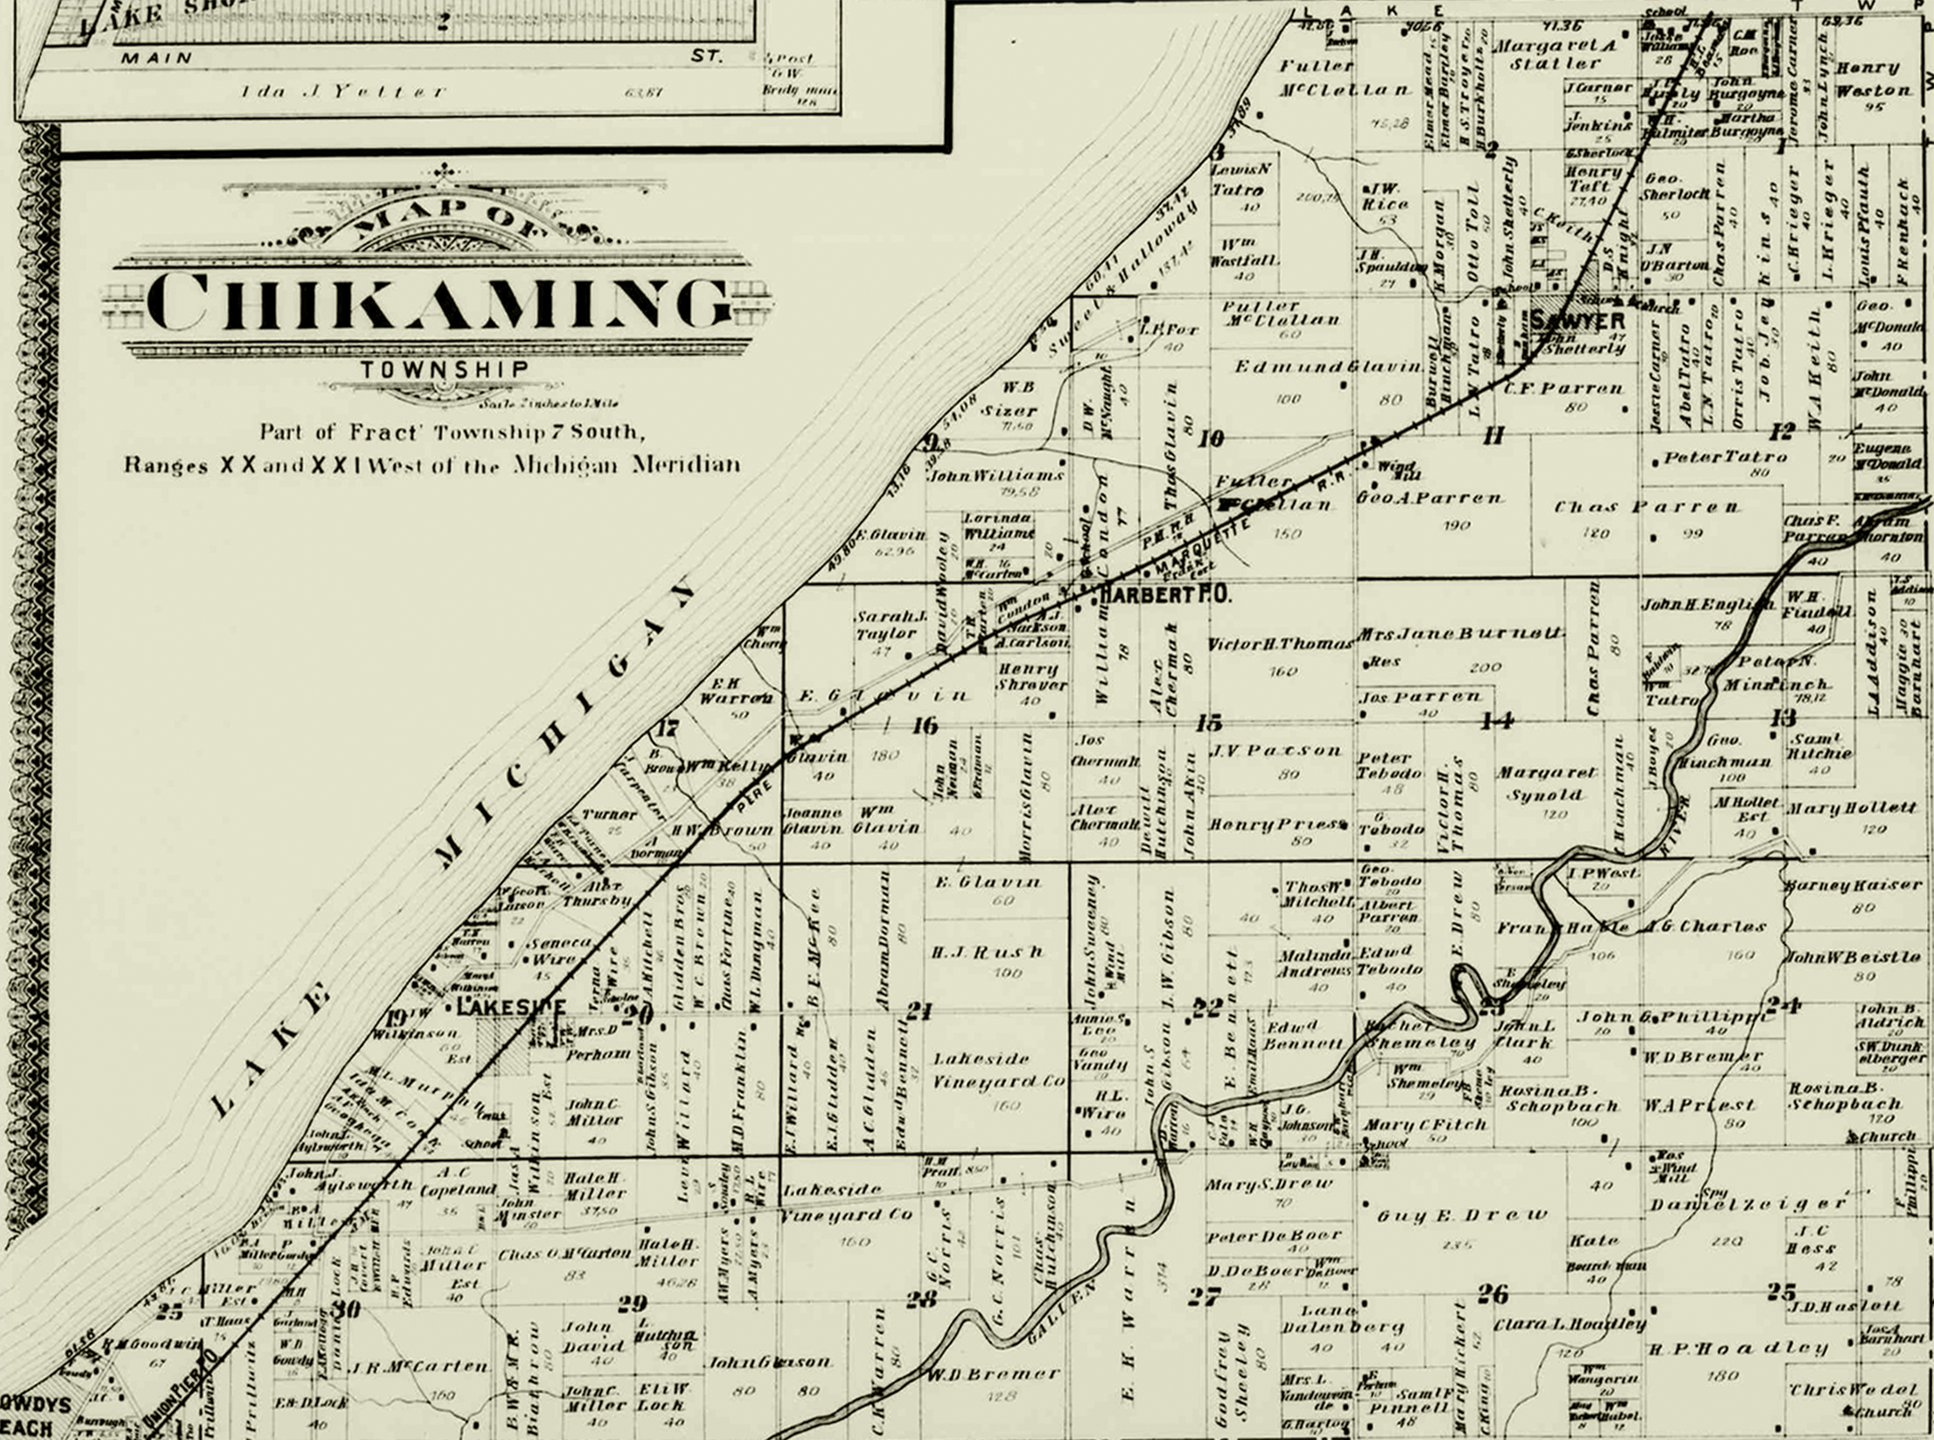 1903 Chikaming Township, Michigan landownership map